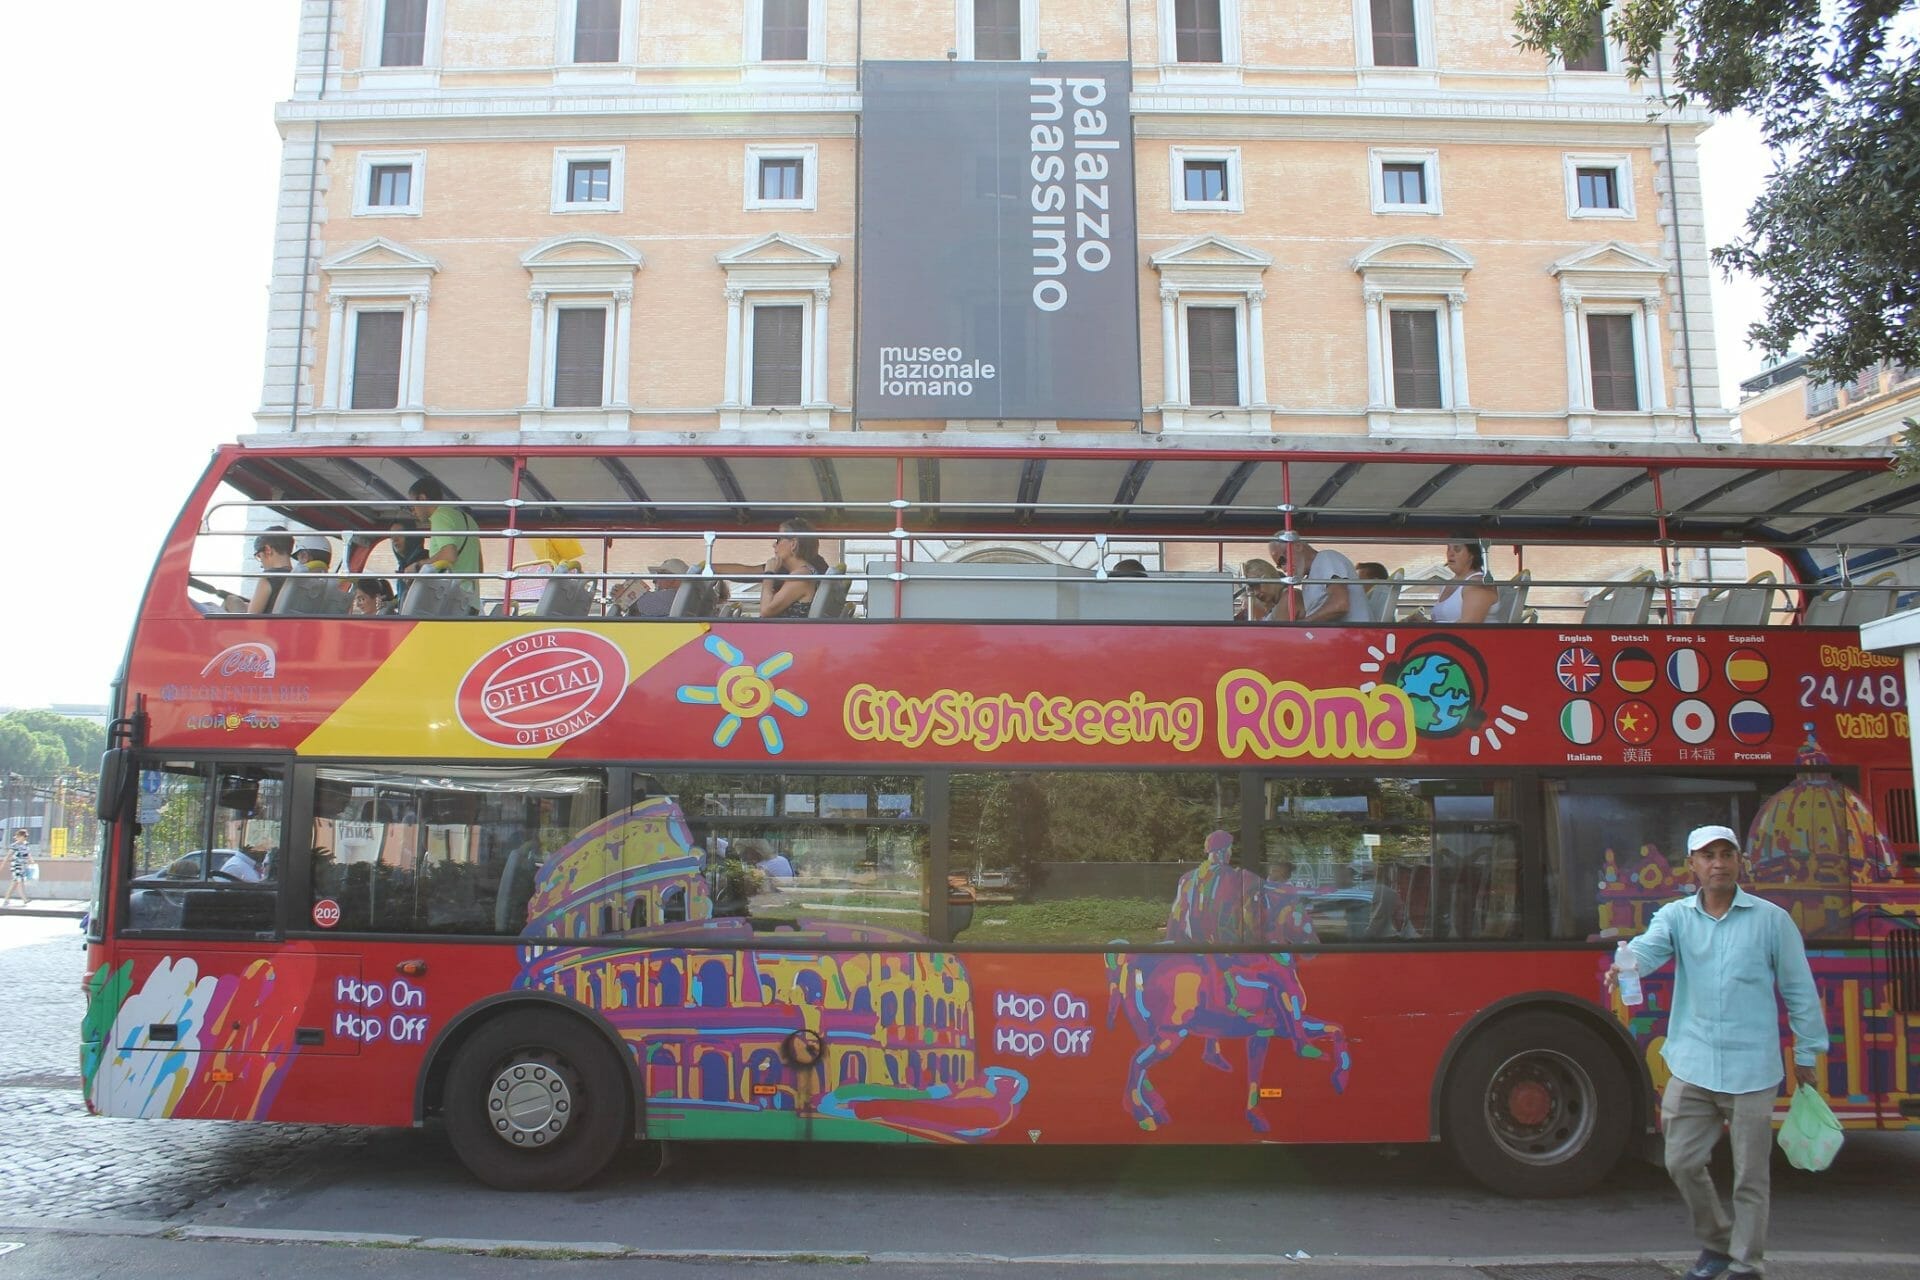 hop on hop off rome bus tour